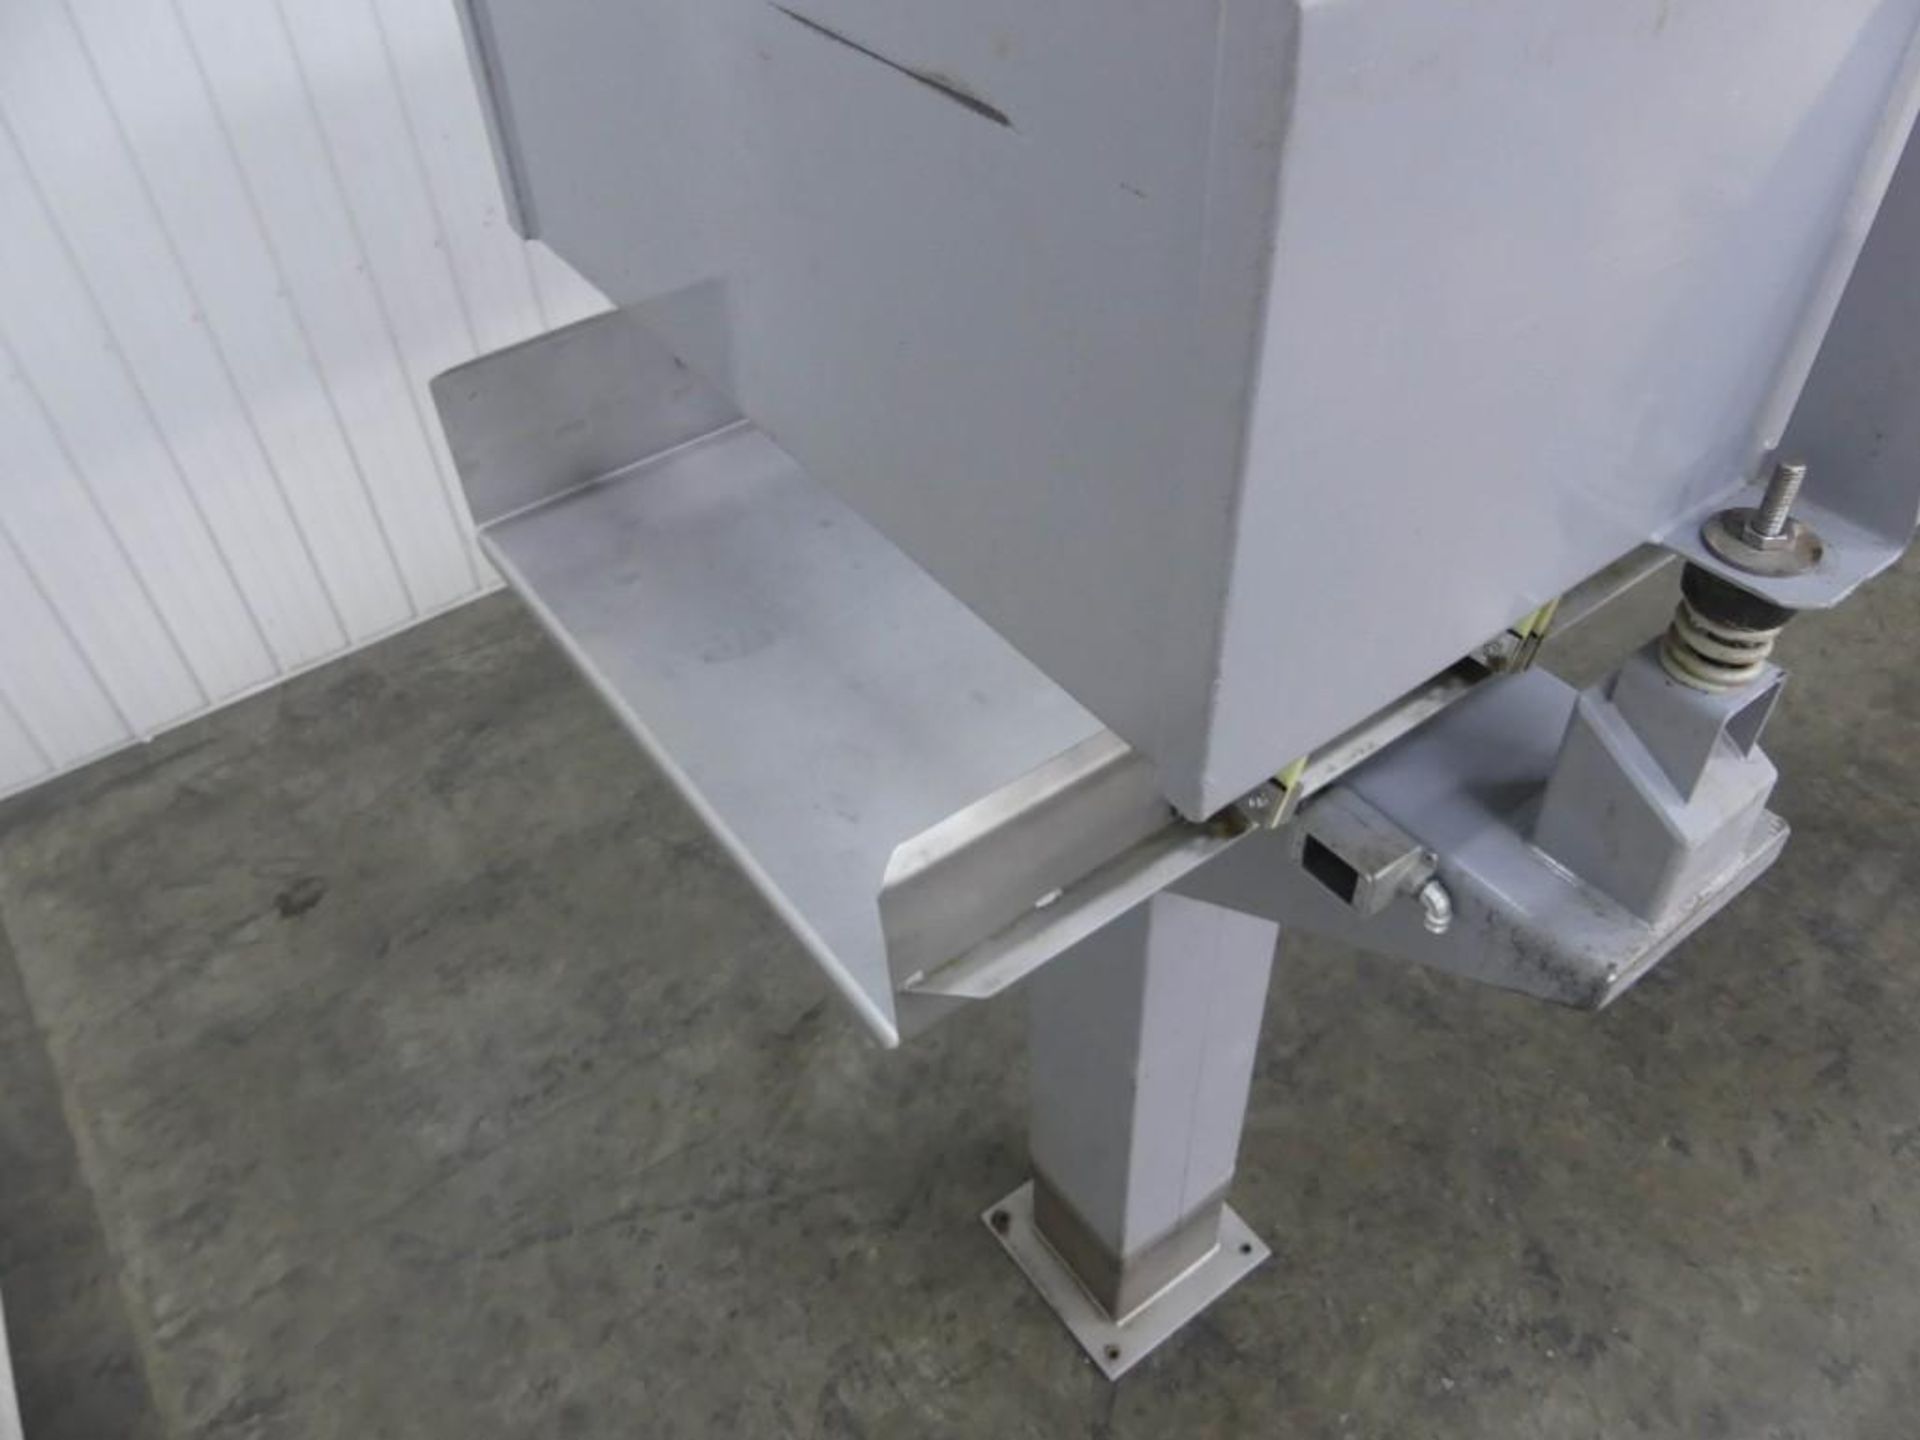 Key Iso-Flo Vibratory Conveyor 36" Wide x 17' Long - Image 5 of 8